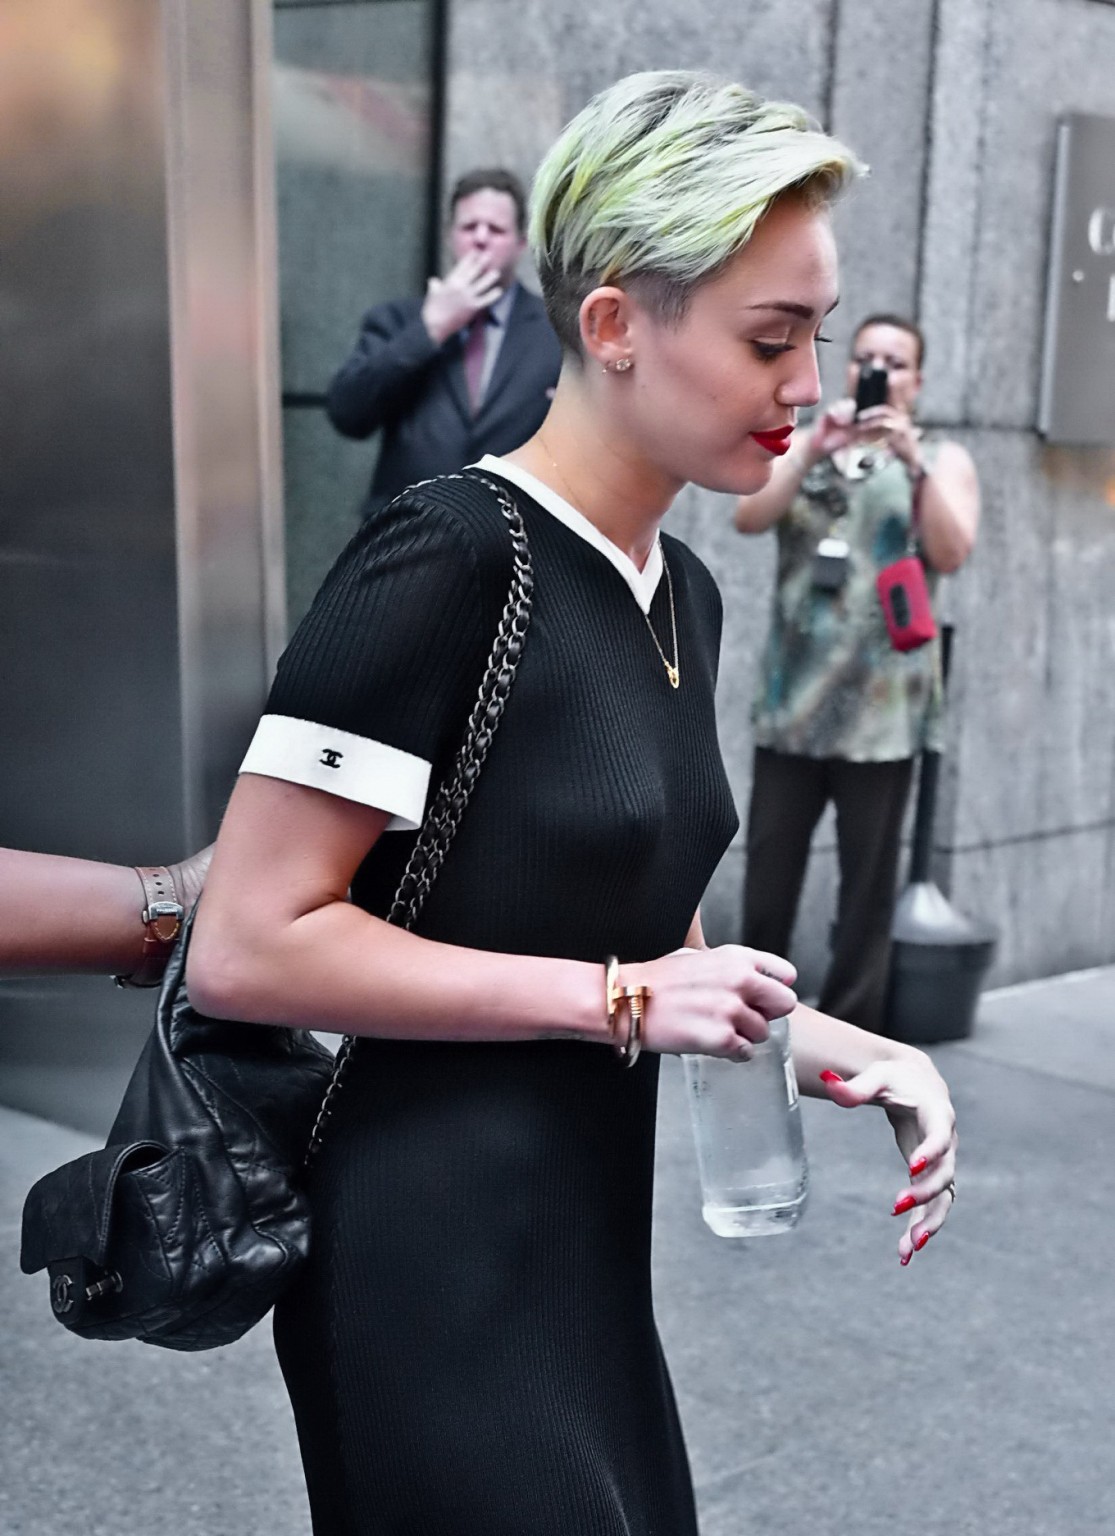 Miley cyrus mostrando sus tetas braless en vestido negro transparente en nyc
 #75224532